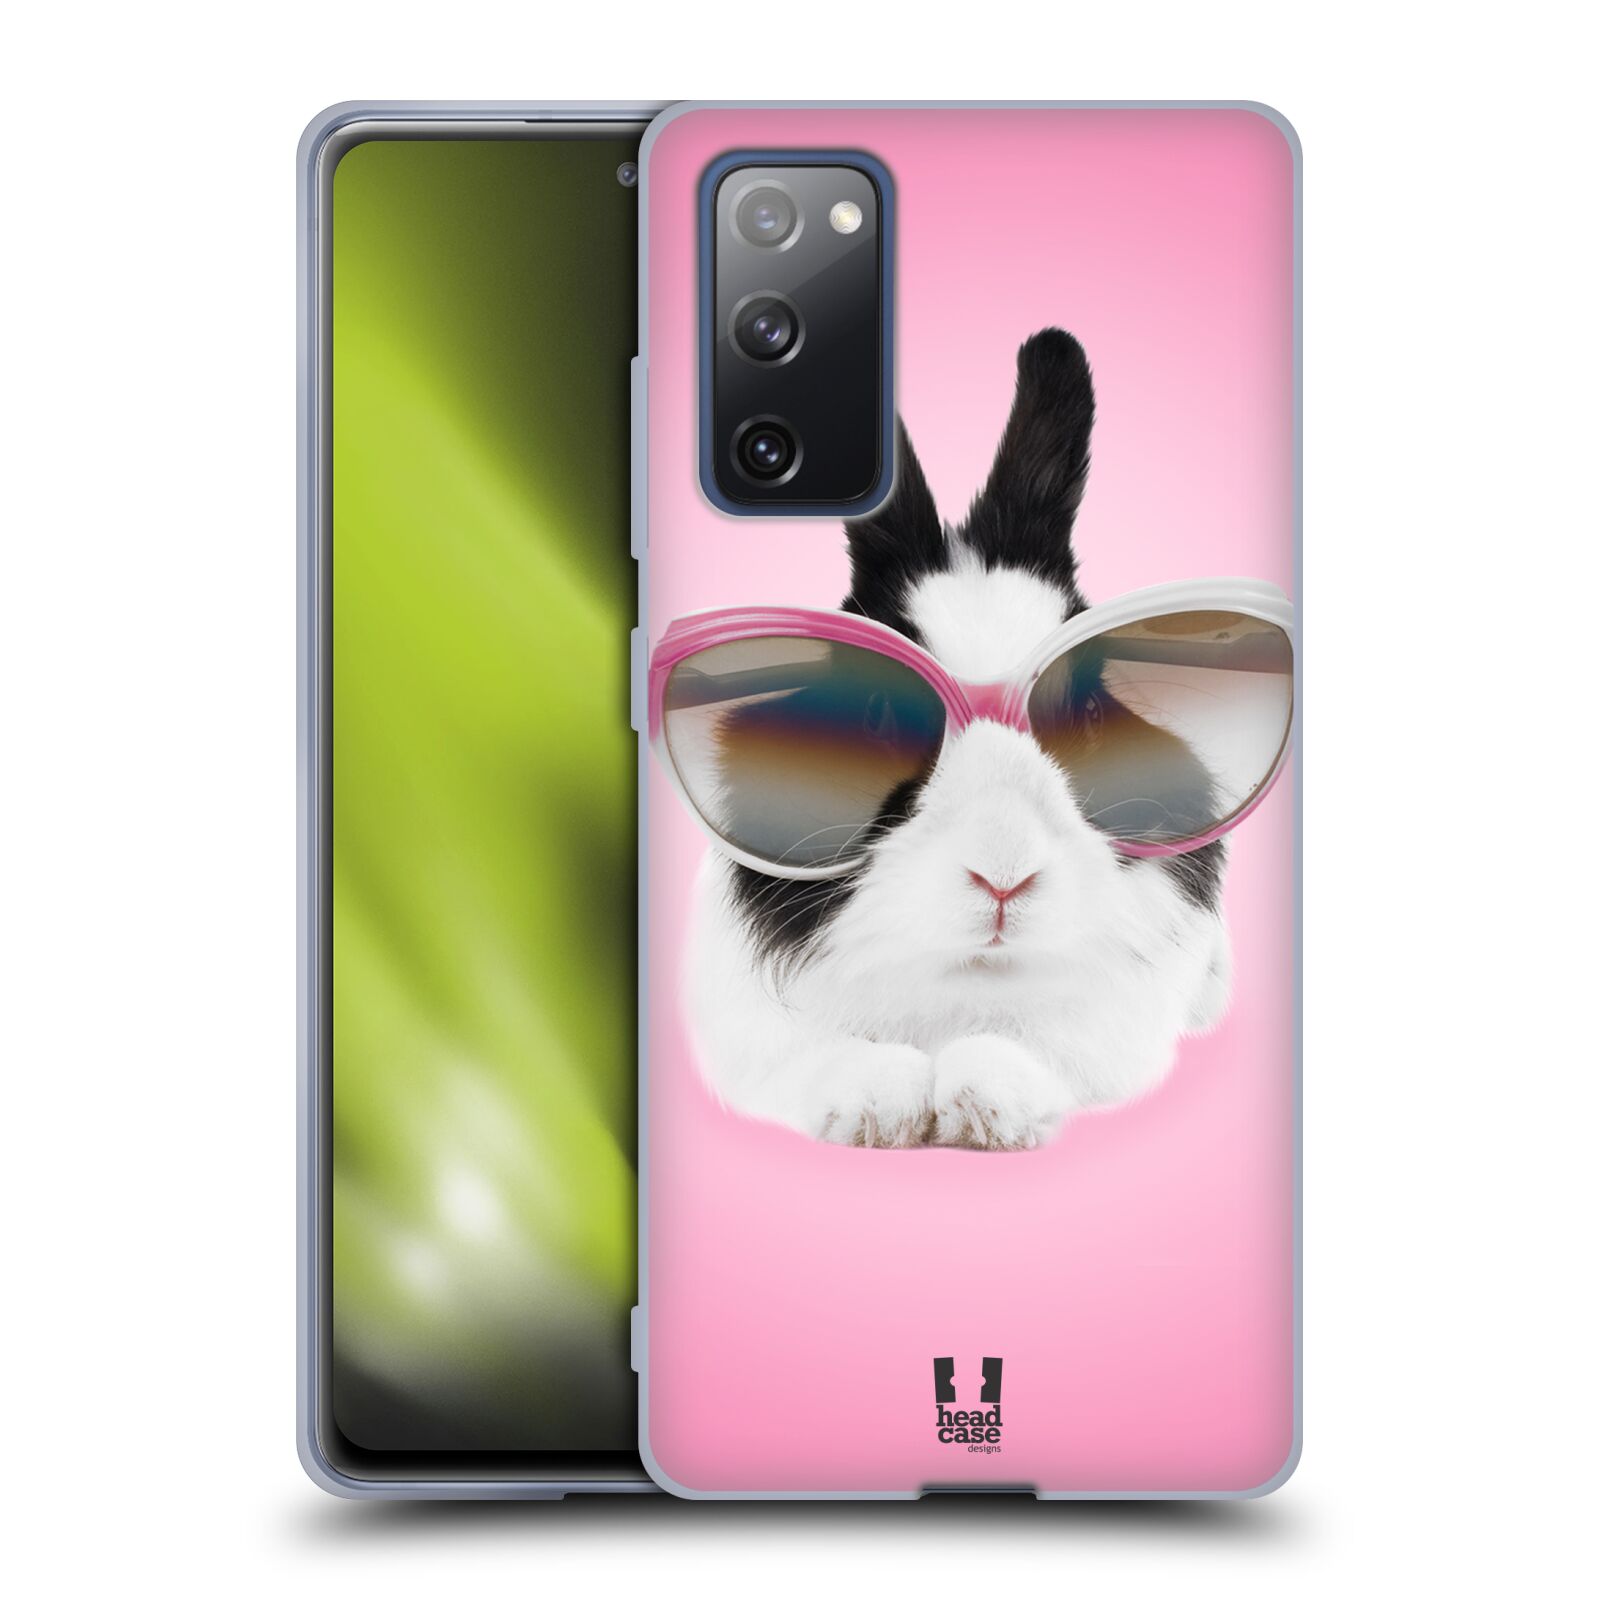 Plastový obal HEAD CASE na mobil Samsung Galaxy S20 FE / S20 FE 5G vzor Legrační zvířátka roztomilý králíček s brýlemi růžová